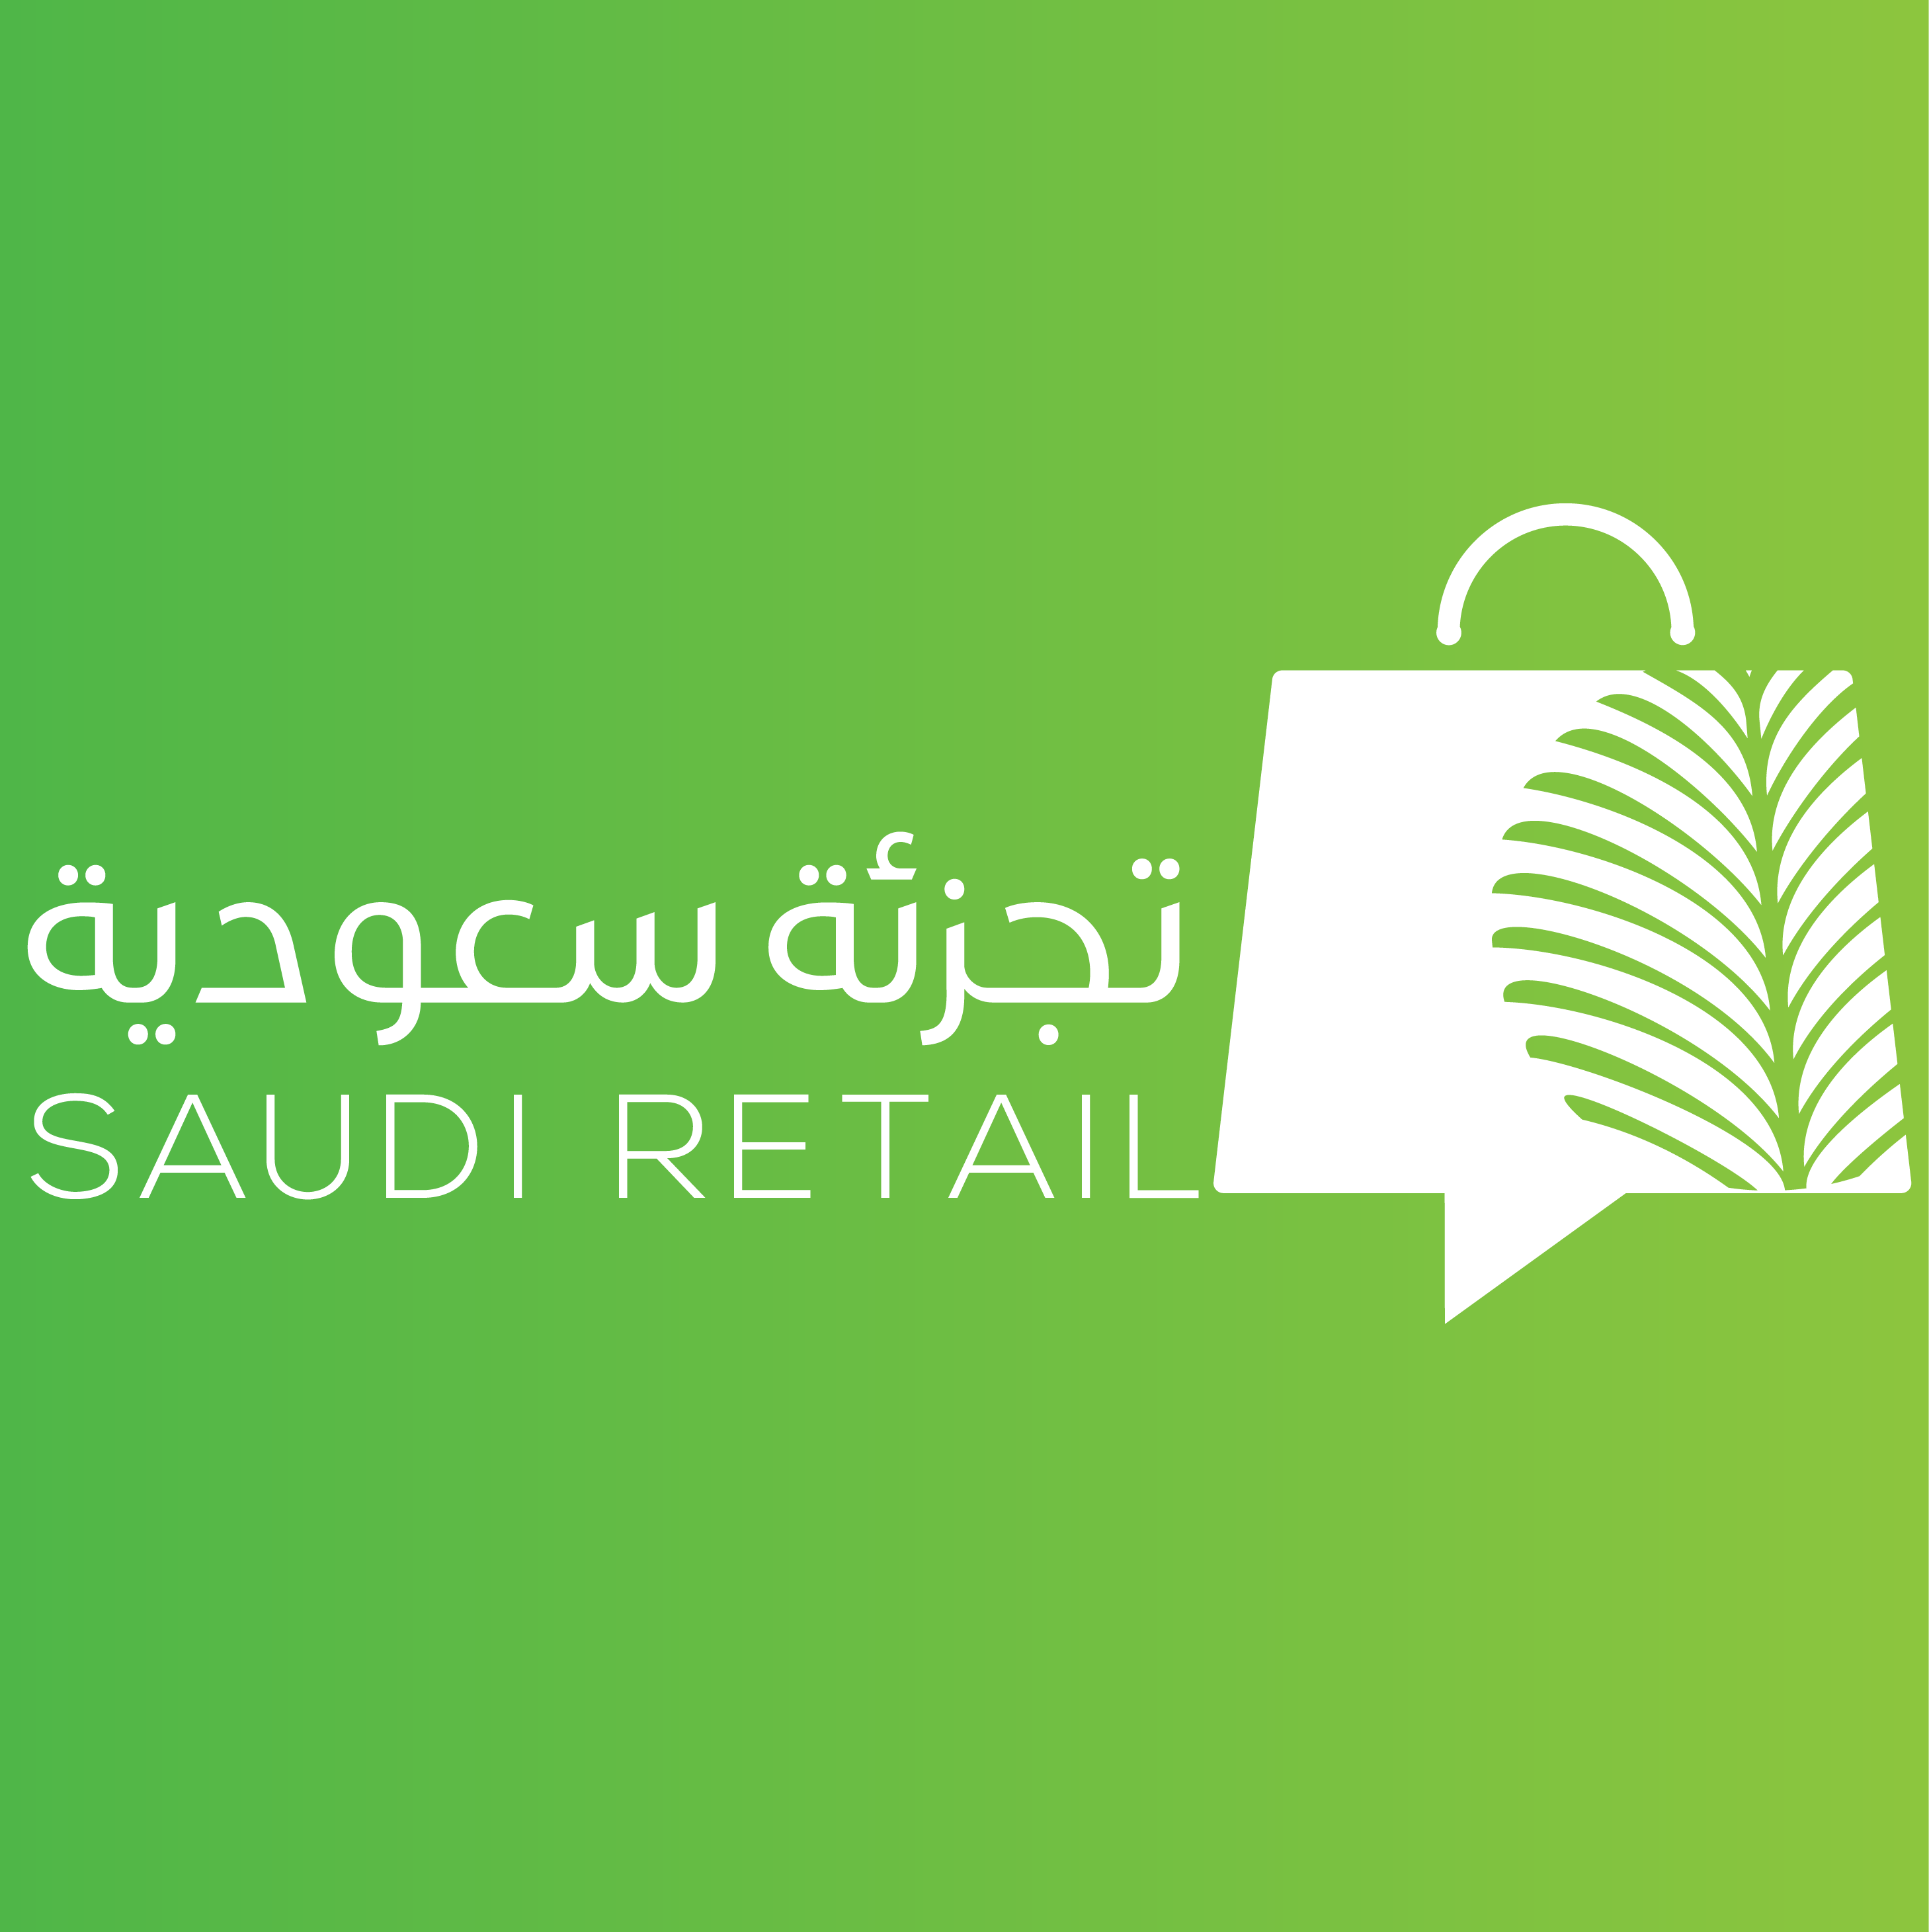 تجزئة سعودية: الحلقة الأولى - موفق جمال | قطاع التجزئة وتأثيره على الاقتصاد